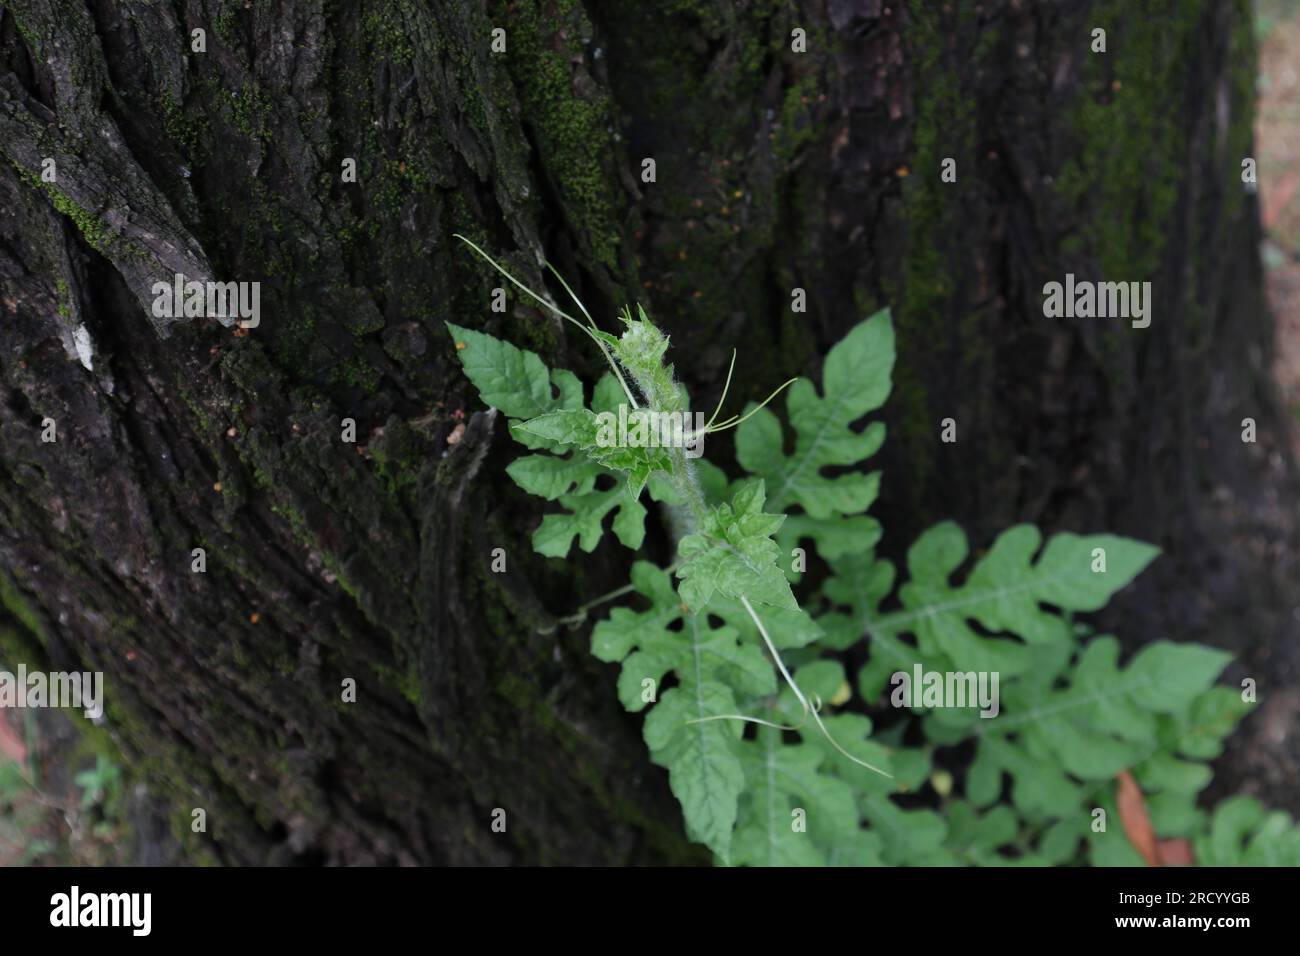 Un piccolo anguria (Citrullus lanatus) che cerca di salire attraverso la corteccia solcata di un tronco di Acacia Auriculiformis, vista dall'alto Foto Stock